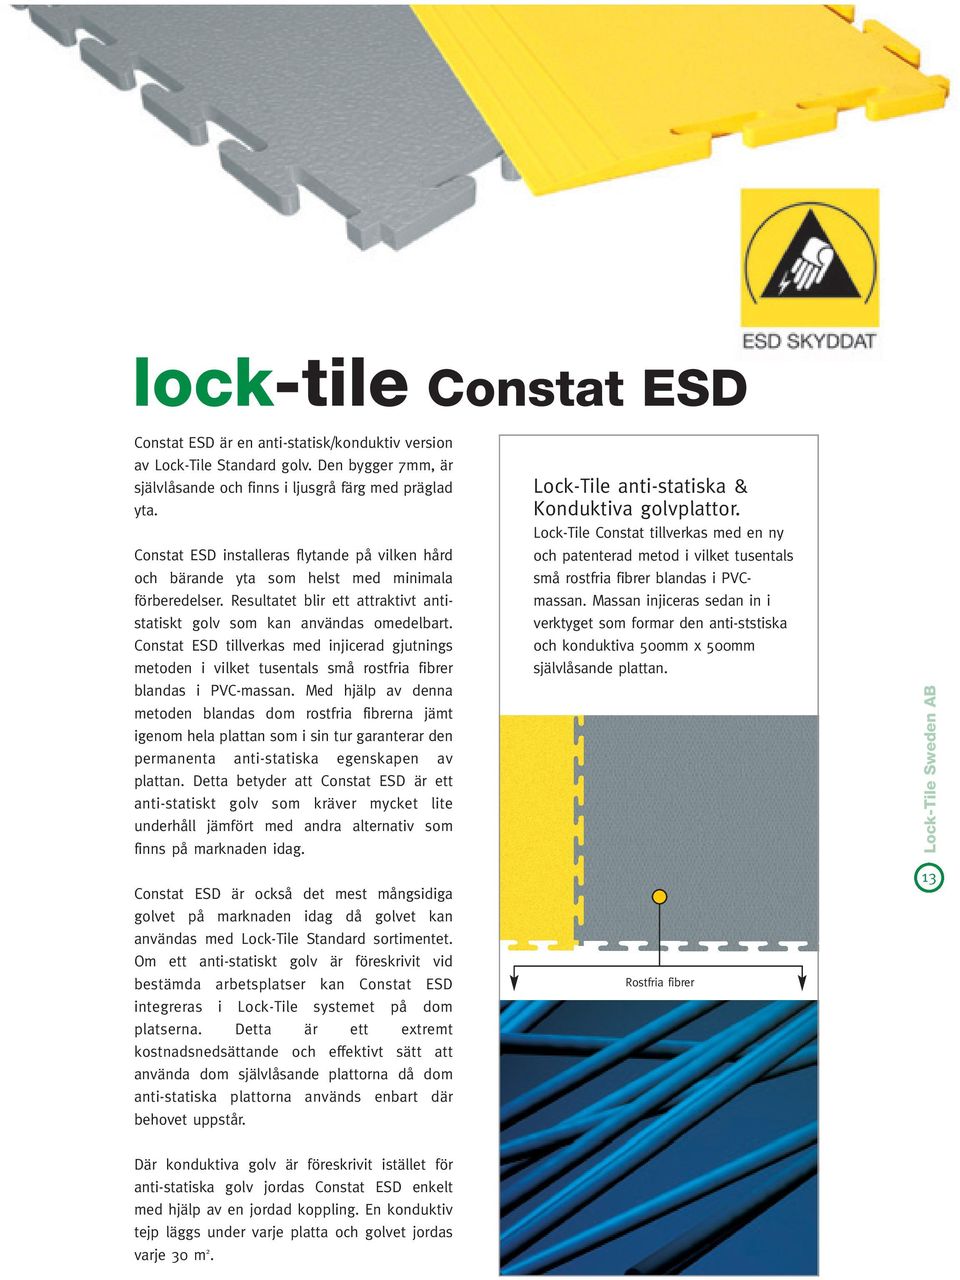 Constat ESD tillverkas med injicerad gjutnings metoden i vilket tusentals små rostfria fibrer blandas i PVC-massan.